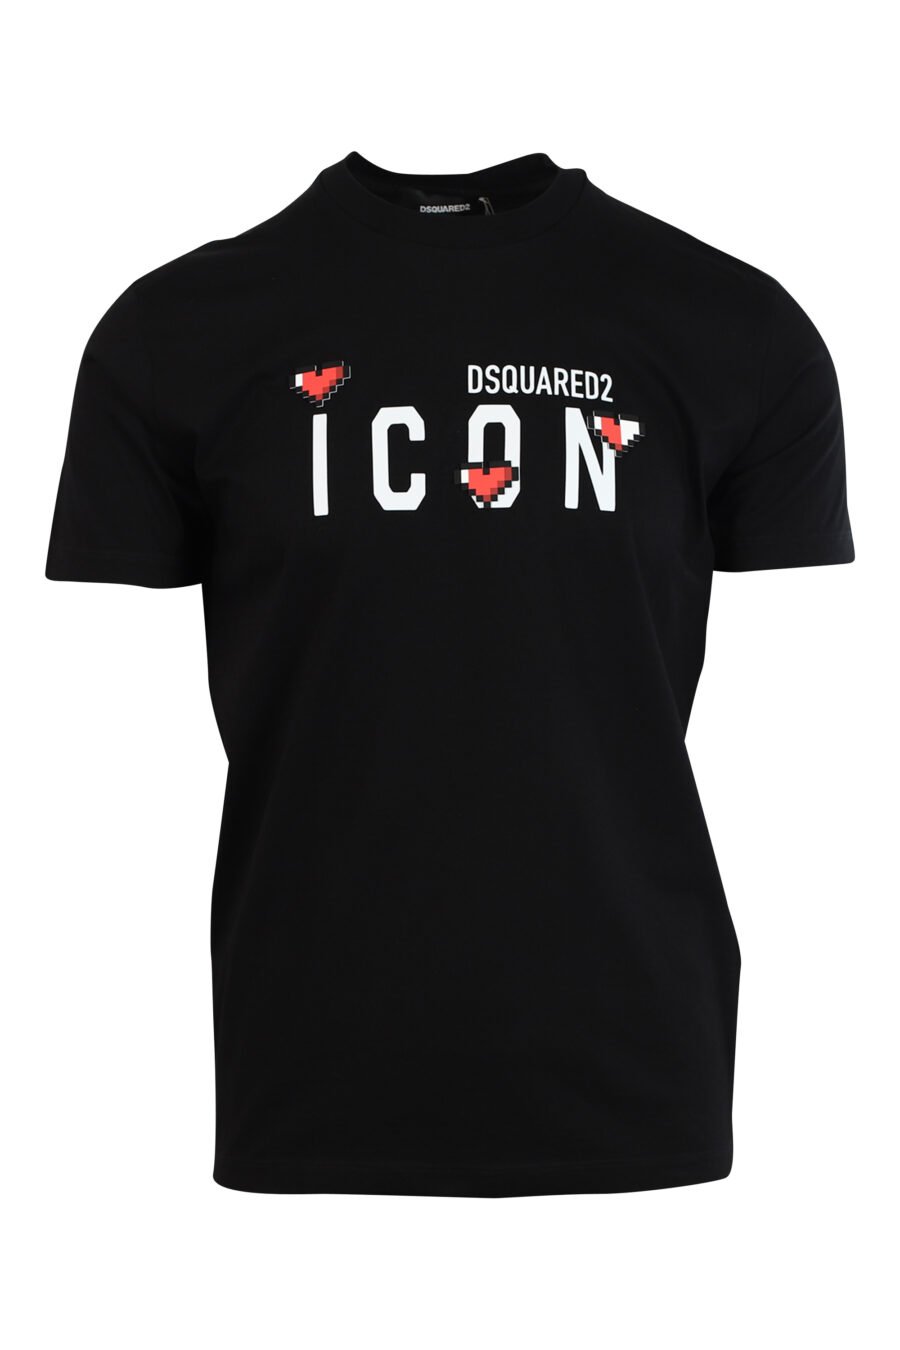 Camiseta negra con maxilogo "icon heart pixel" - 8052134980910